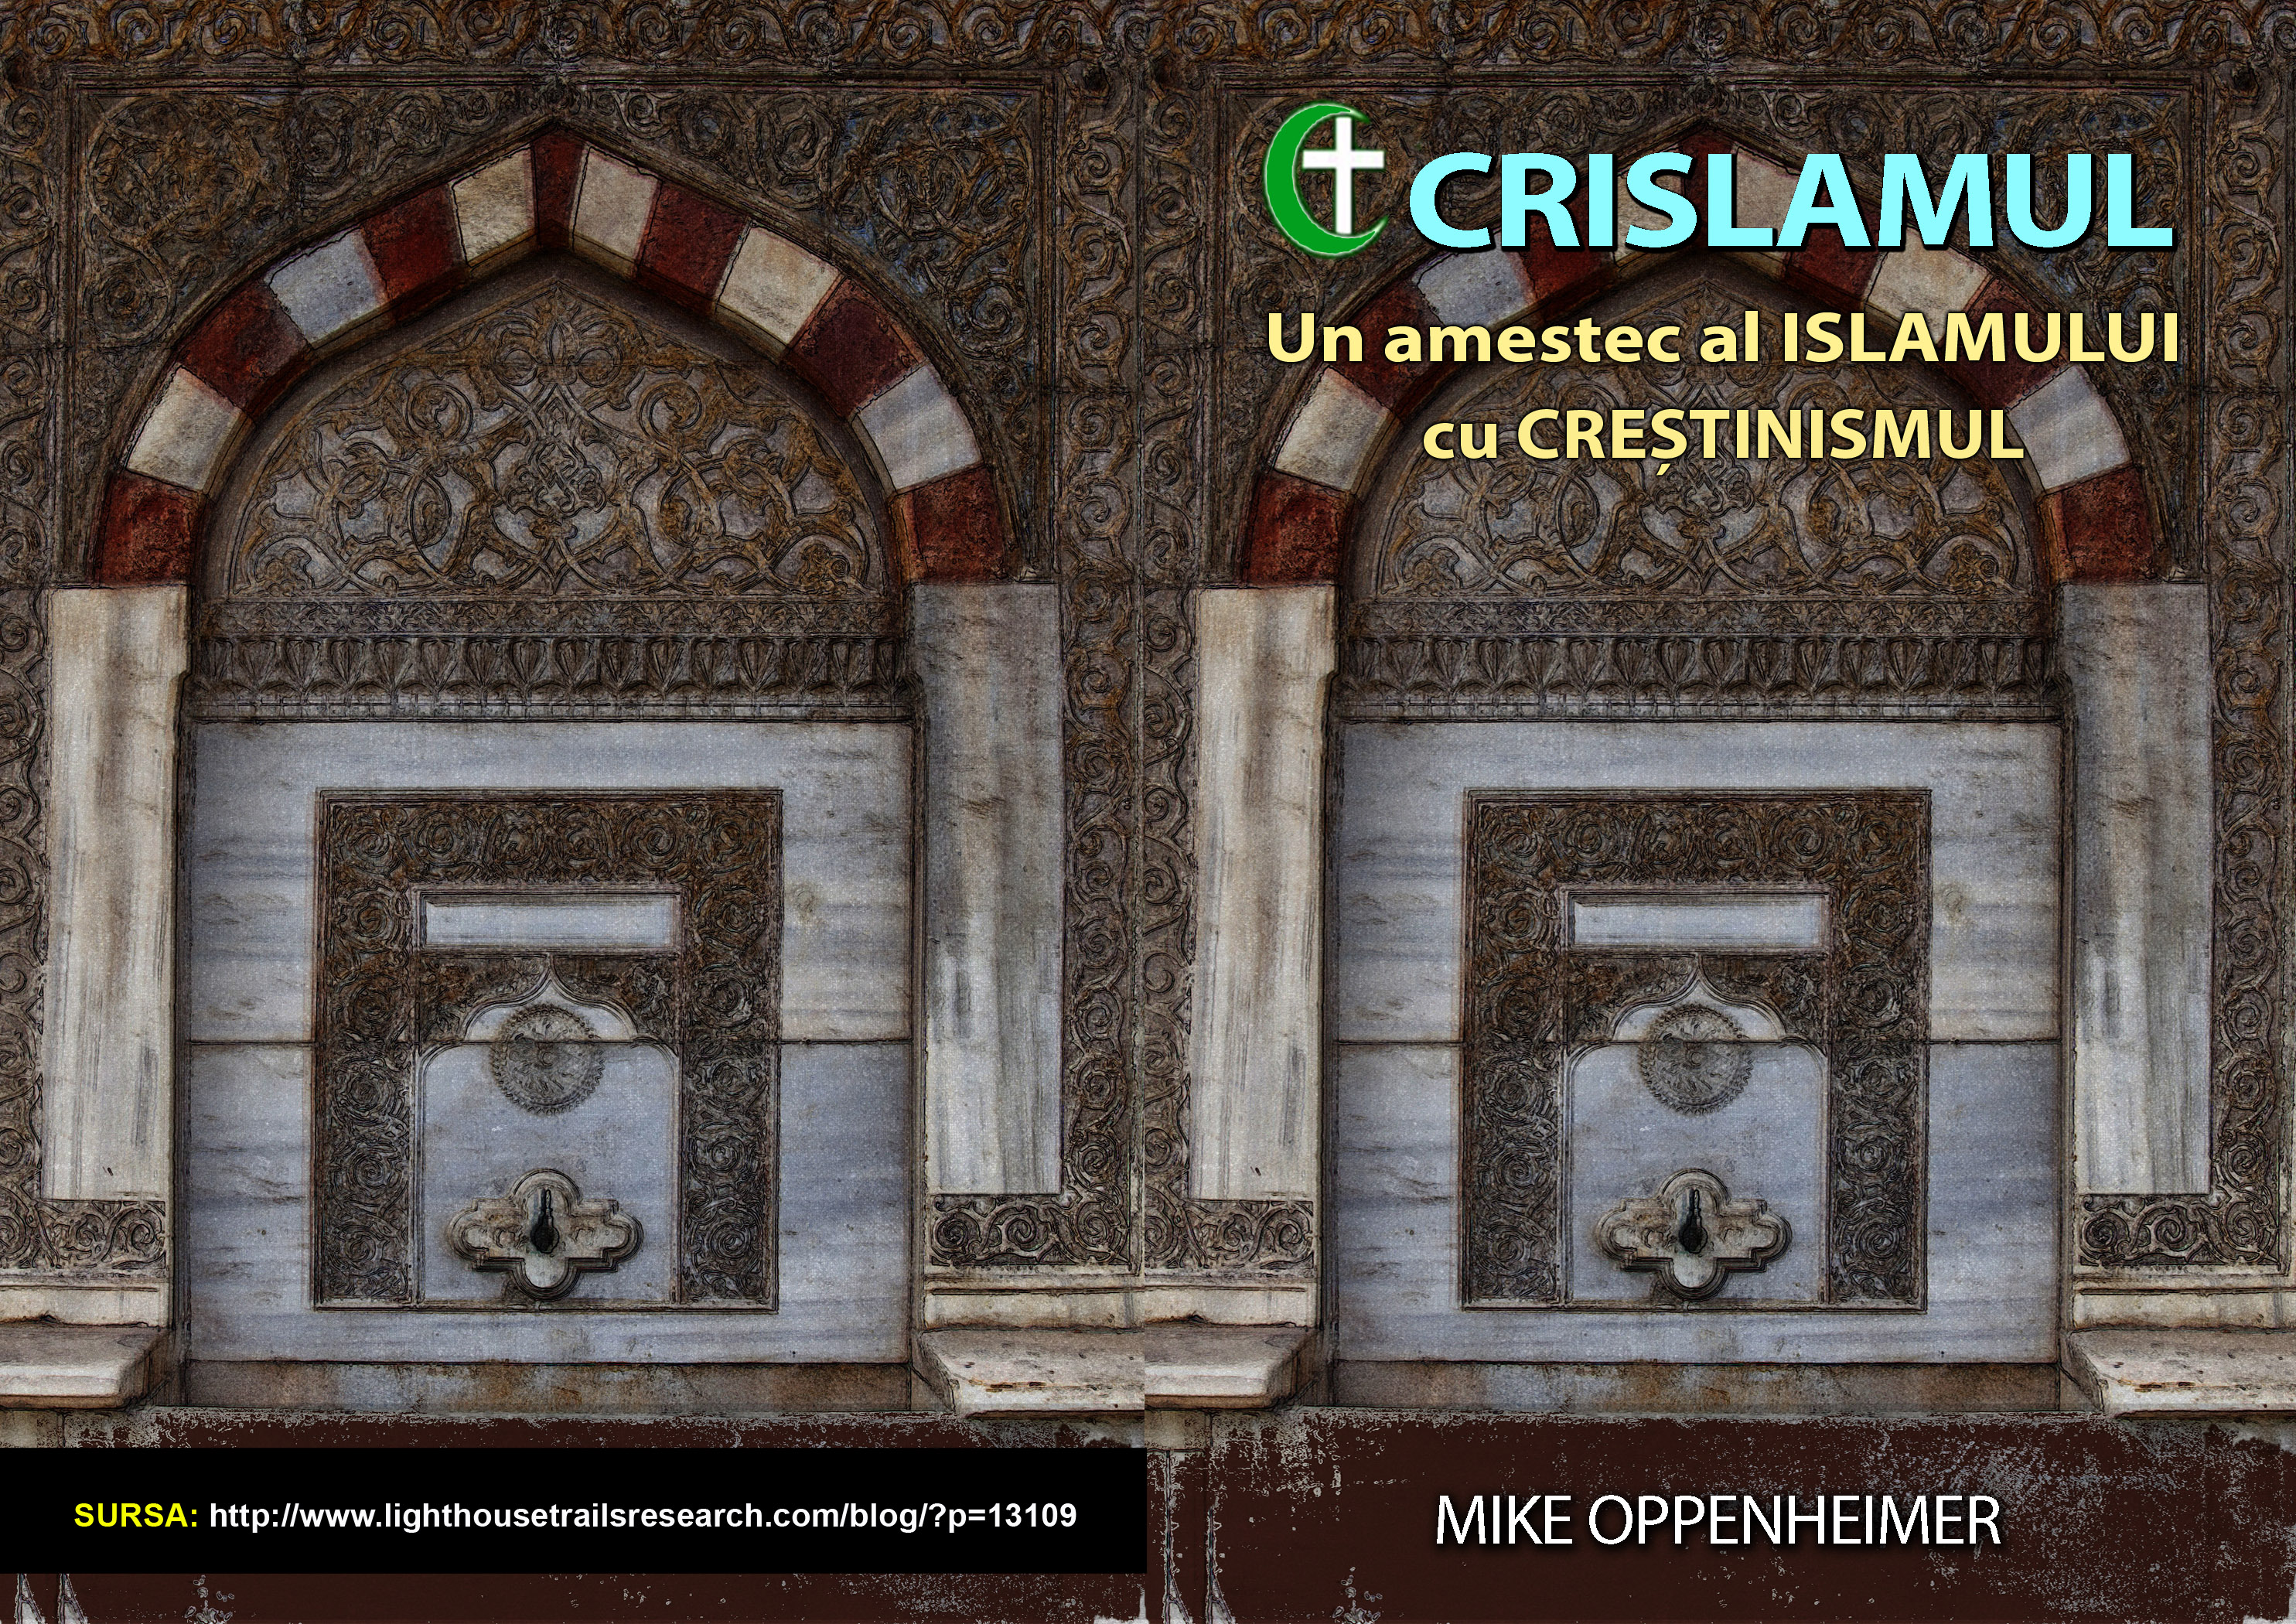 6.Crislamul – un amestec al Crestinismului cu Islamul